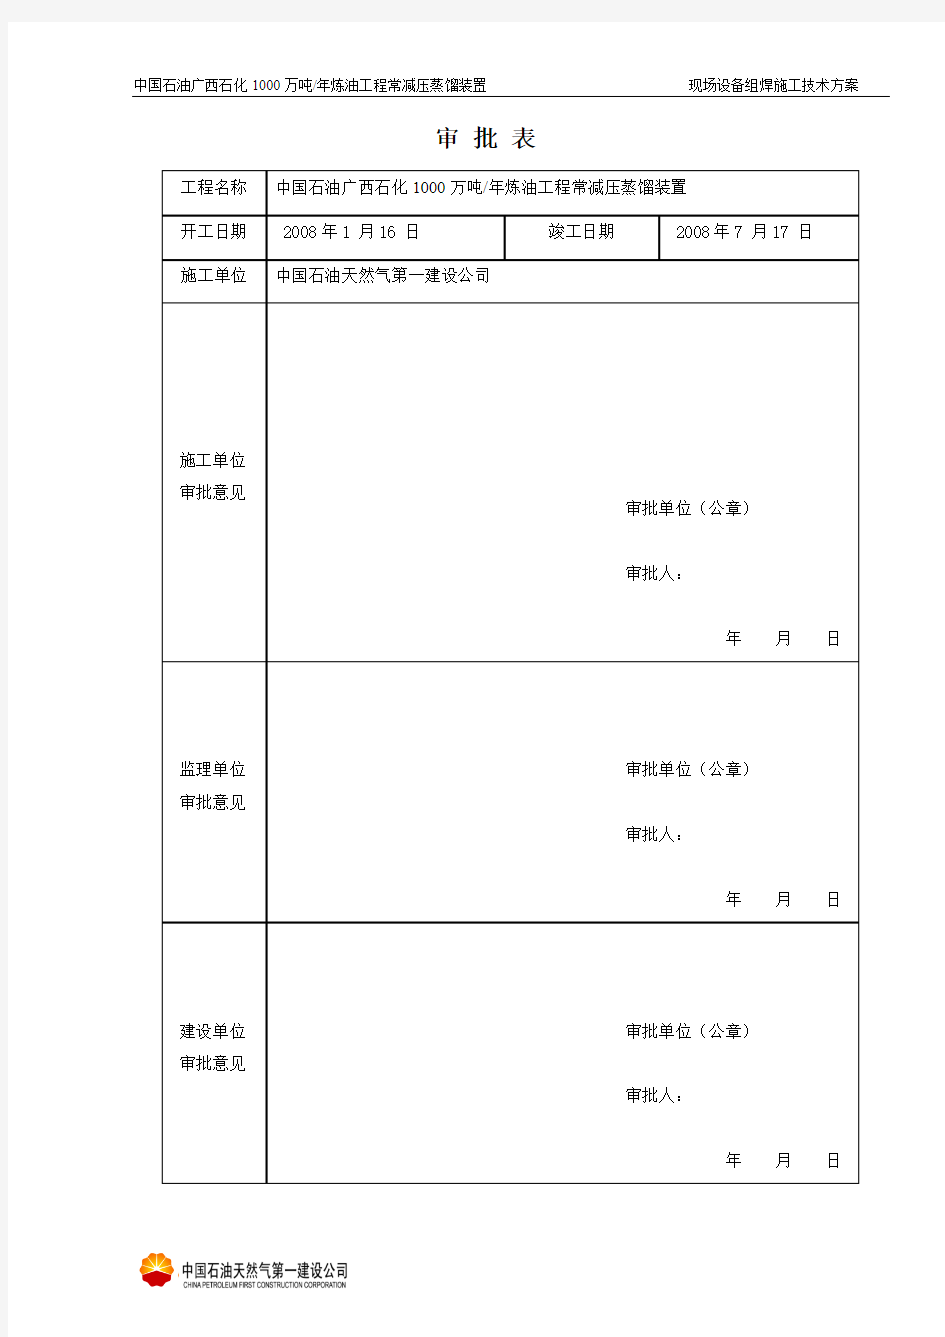 07.12.28(EQP-001)现场组焊设备方案最终版(更新)(李大勇)